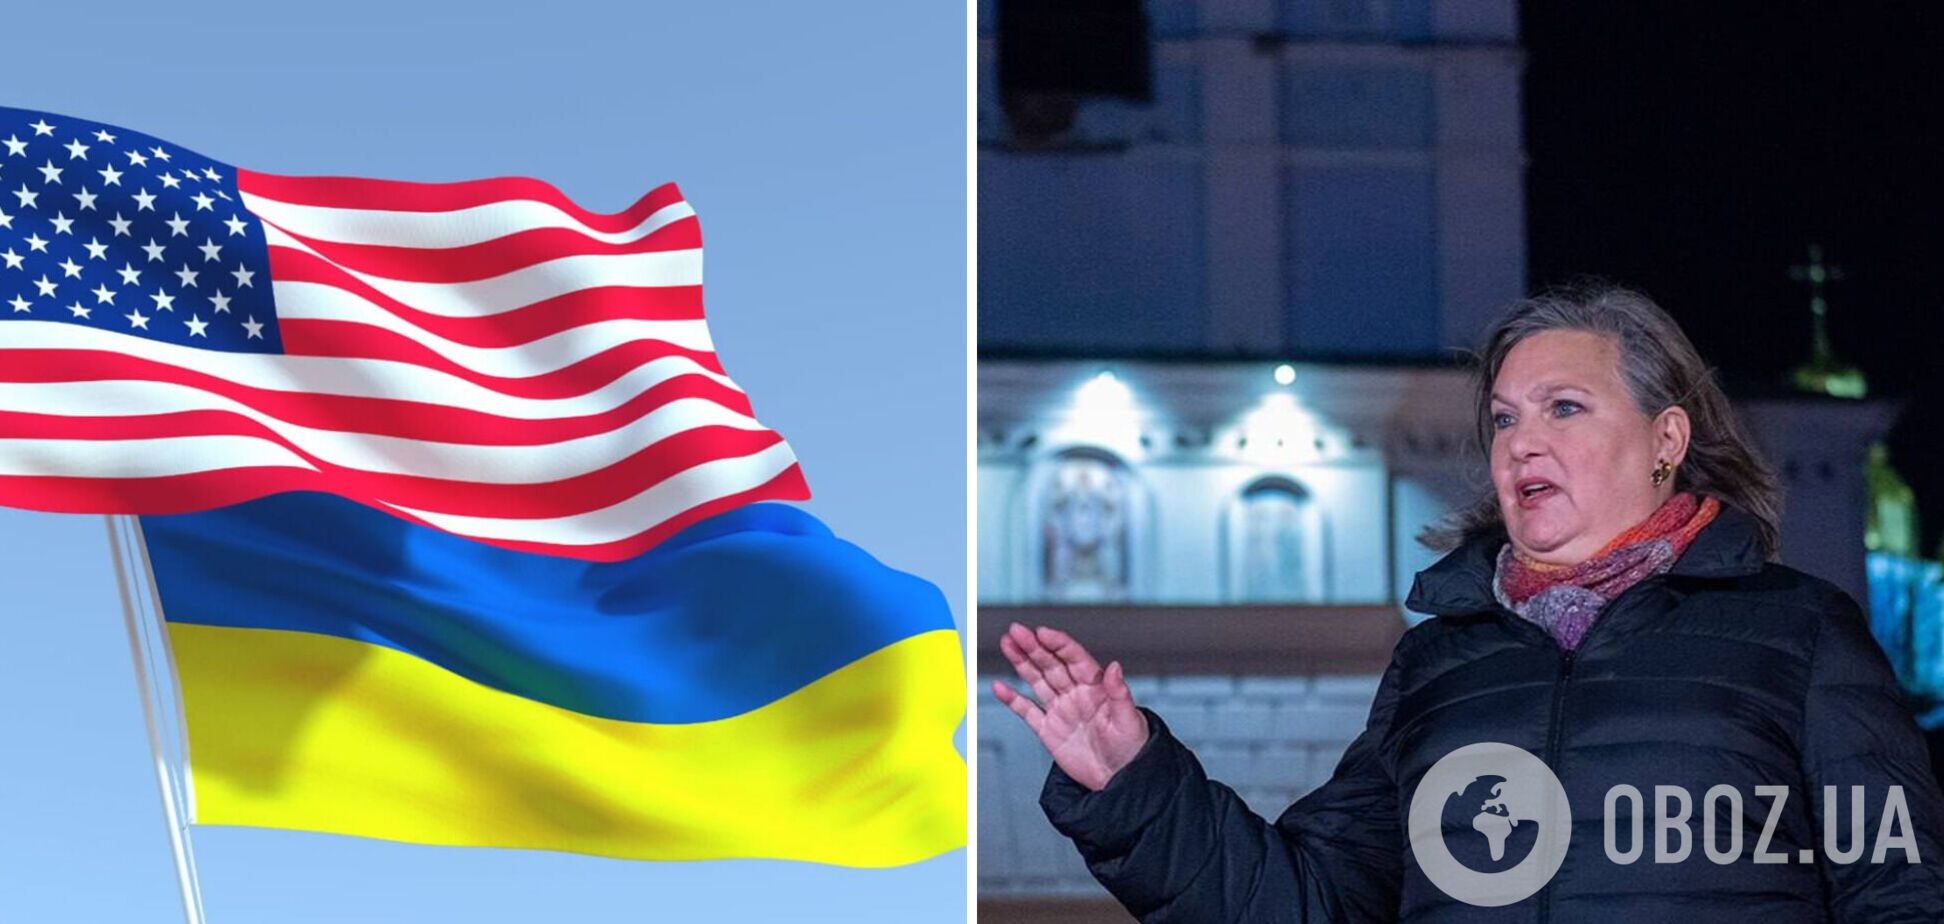 Нуланд выразила 'большую уверенность', что Конгресс США проголосует за помощь Украине